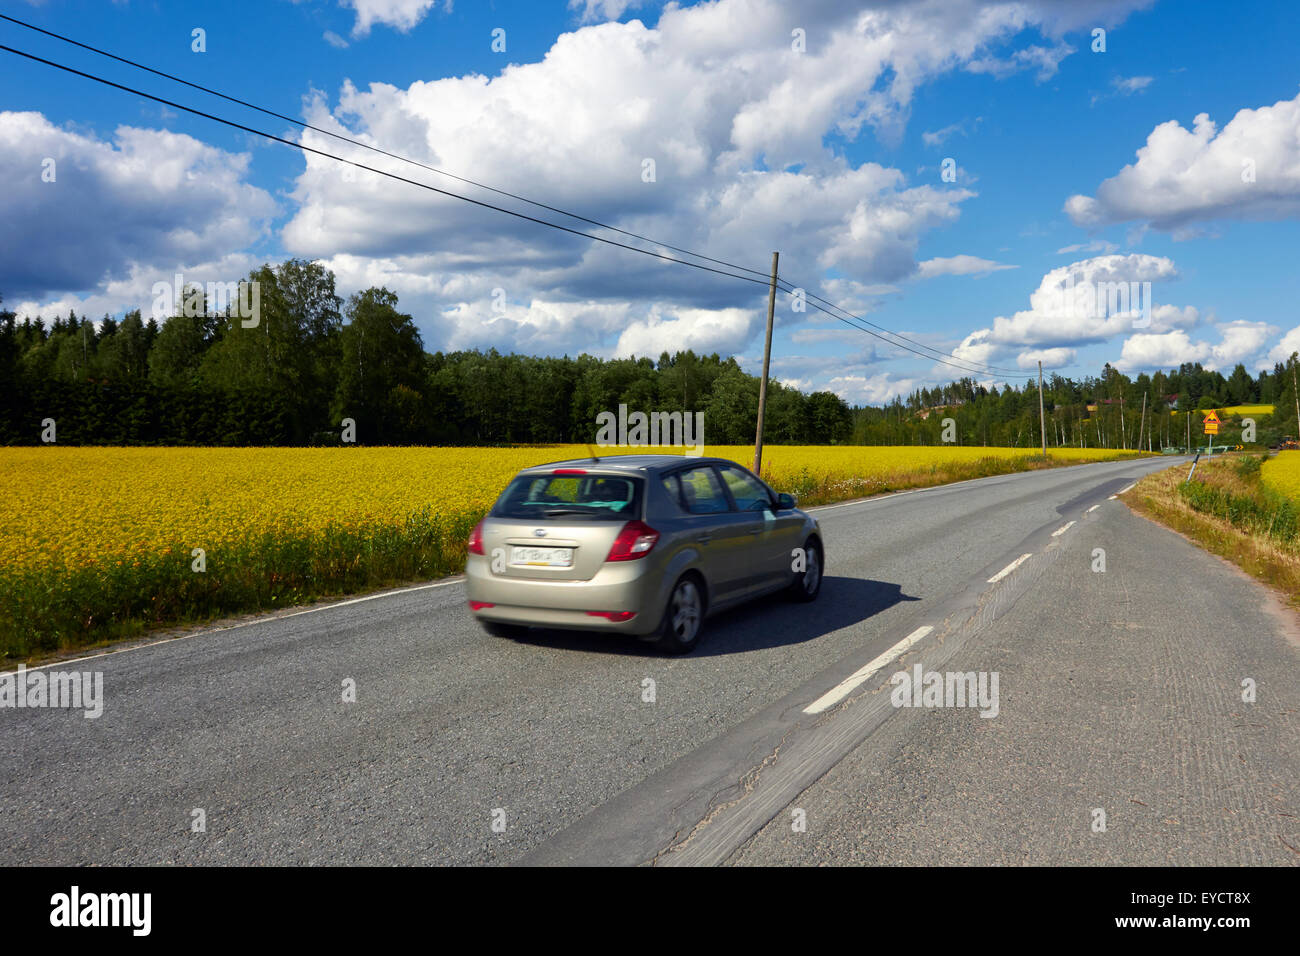 Rural road scene, Ristiina Finland Stock Photo